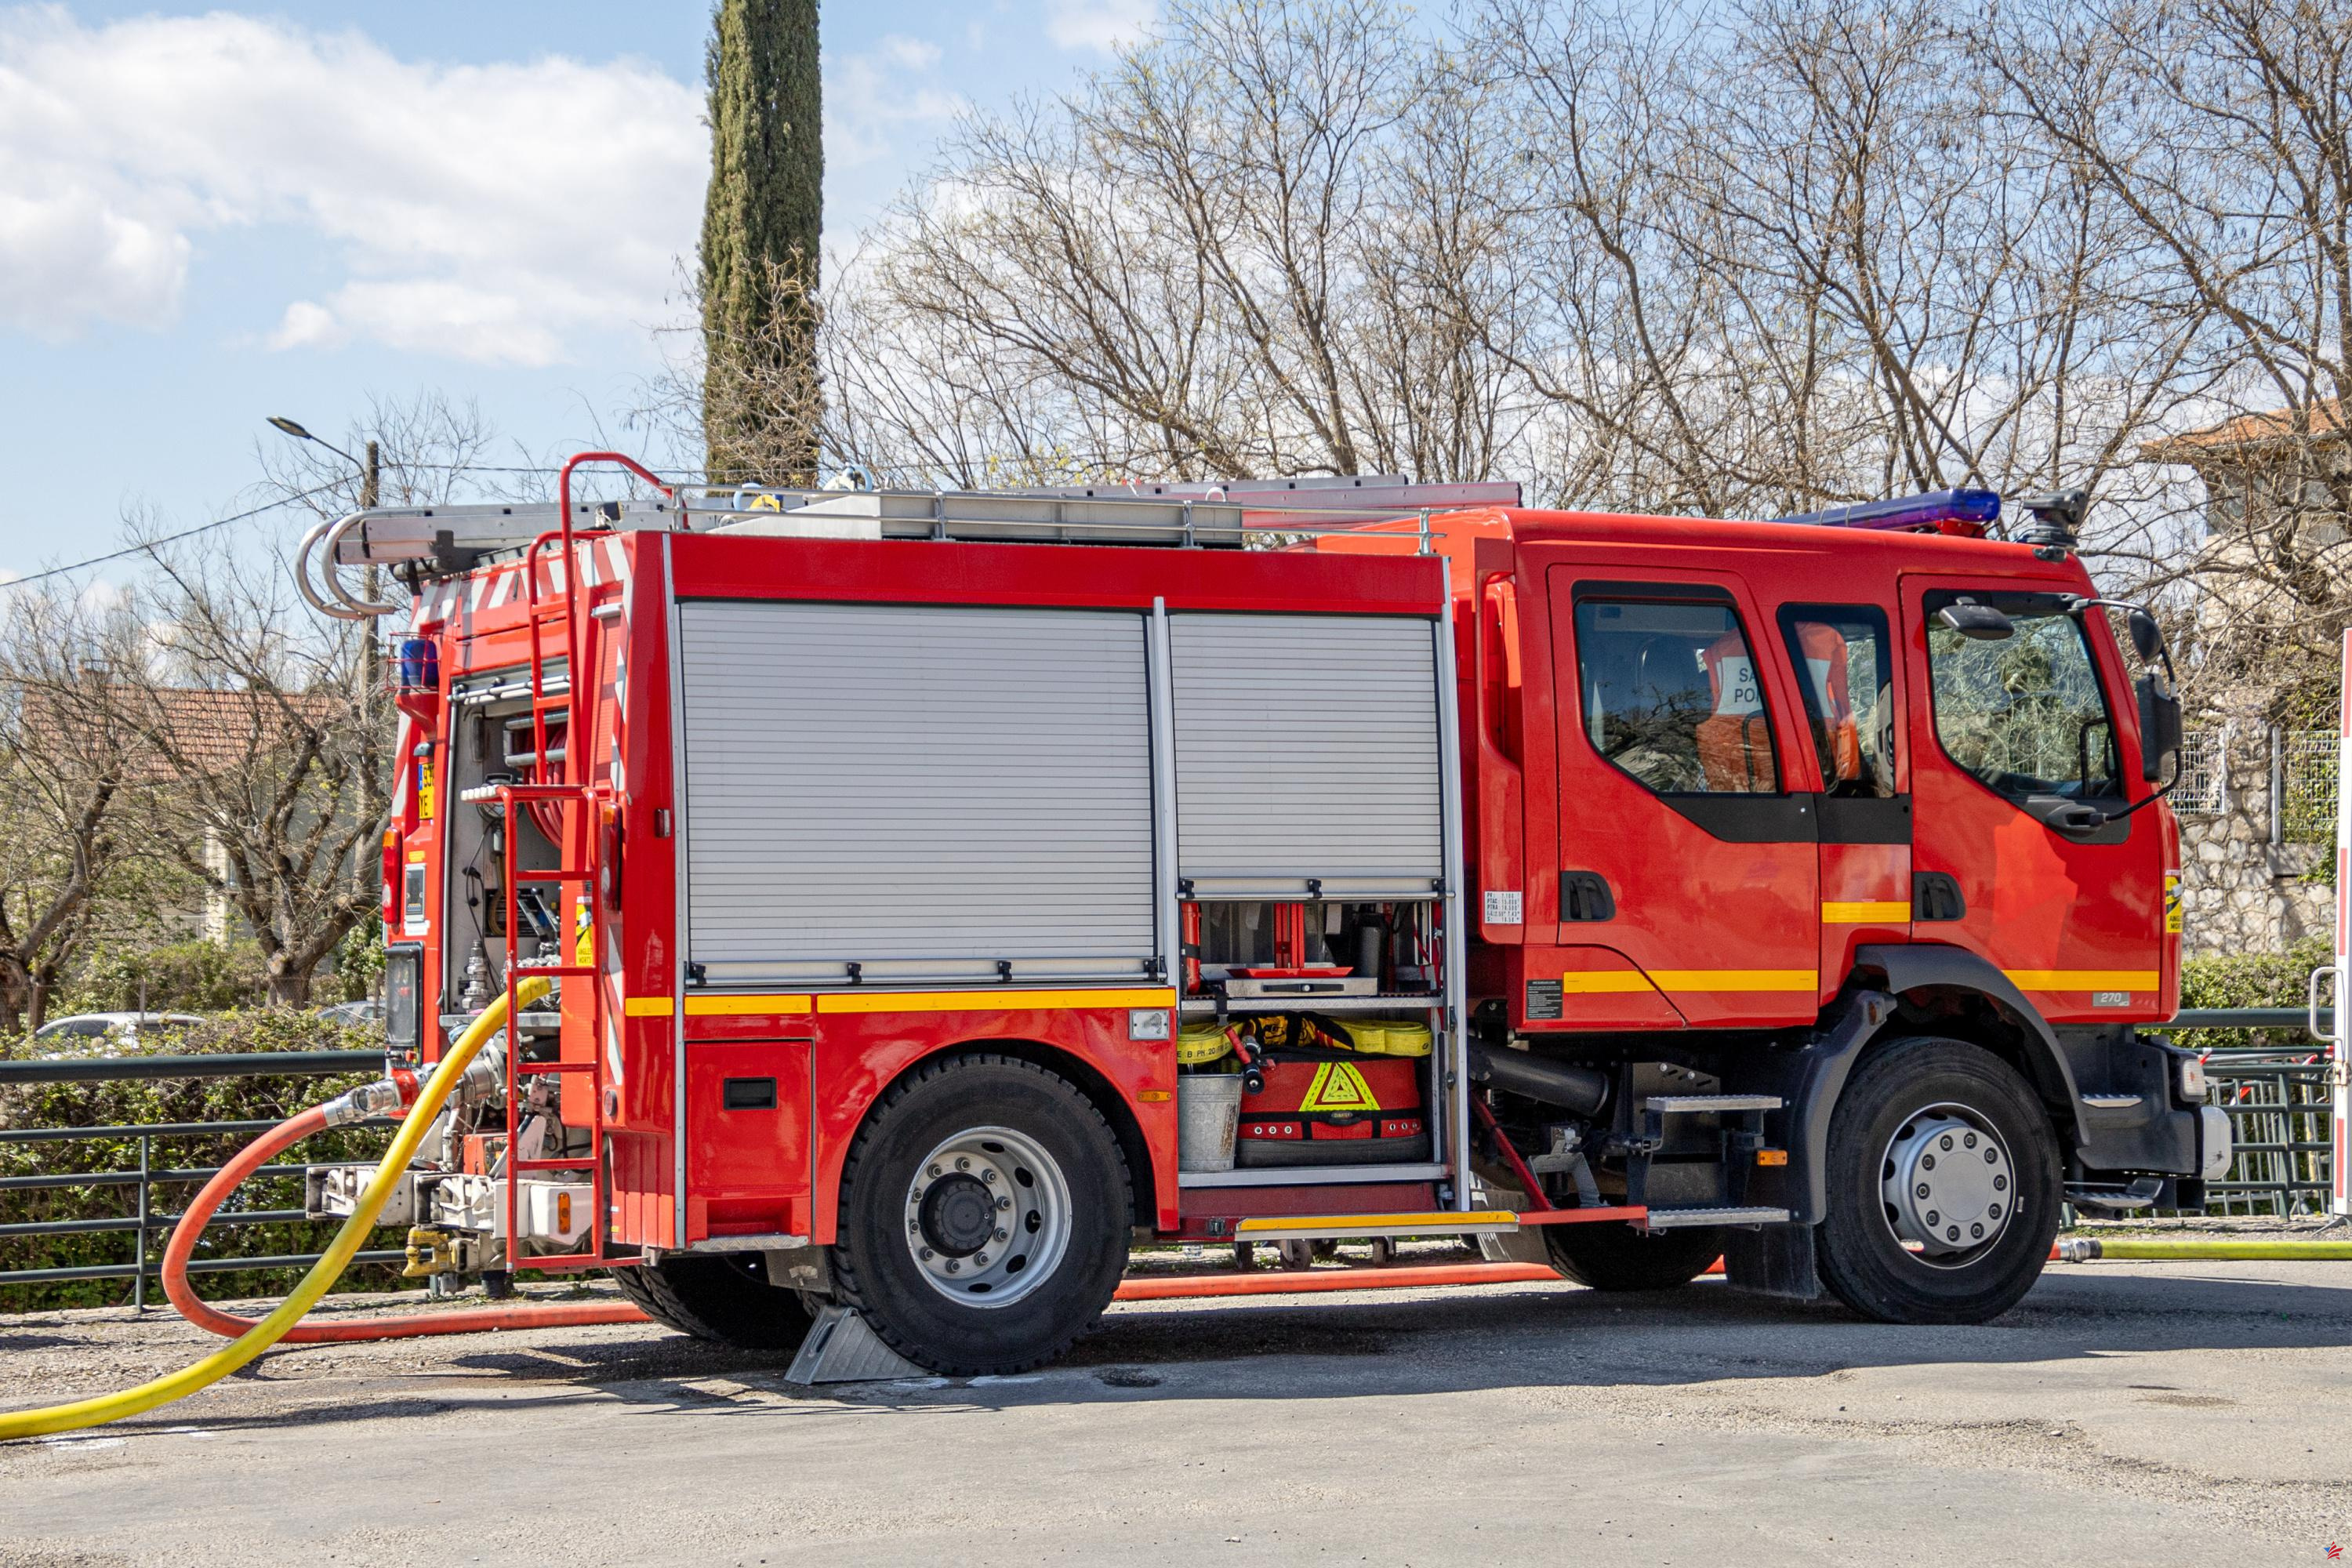 Lyon: un vehículo de bomberos robado en el centro de la ciudad